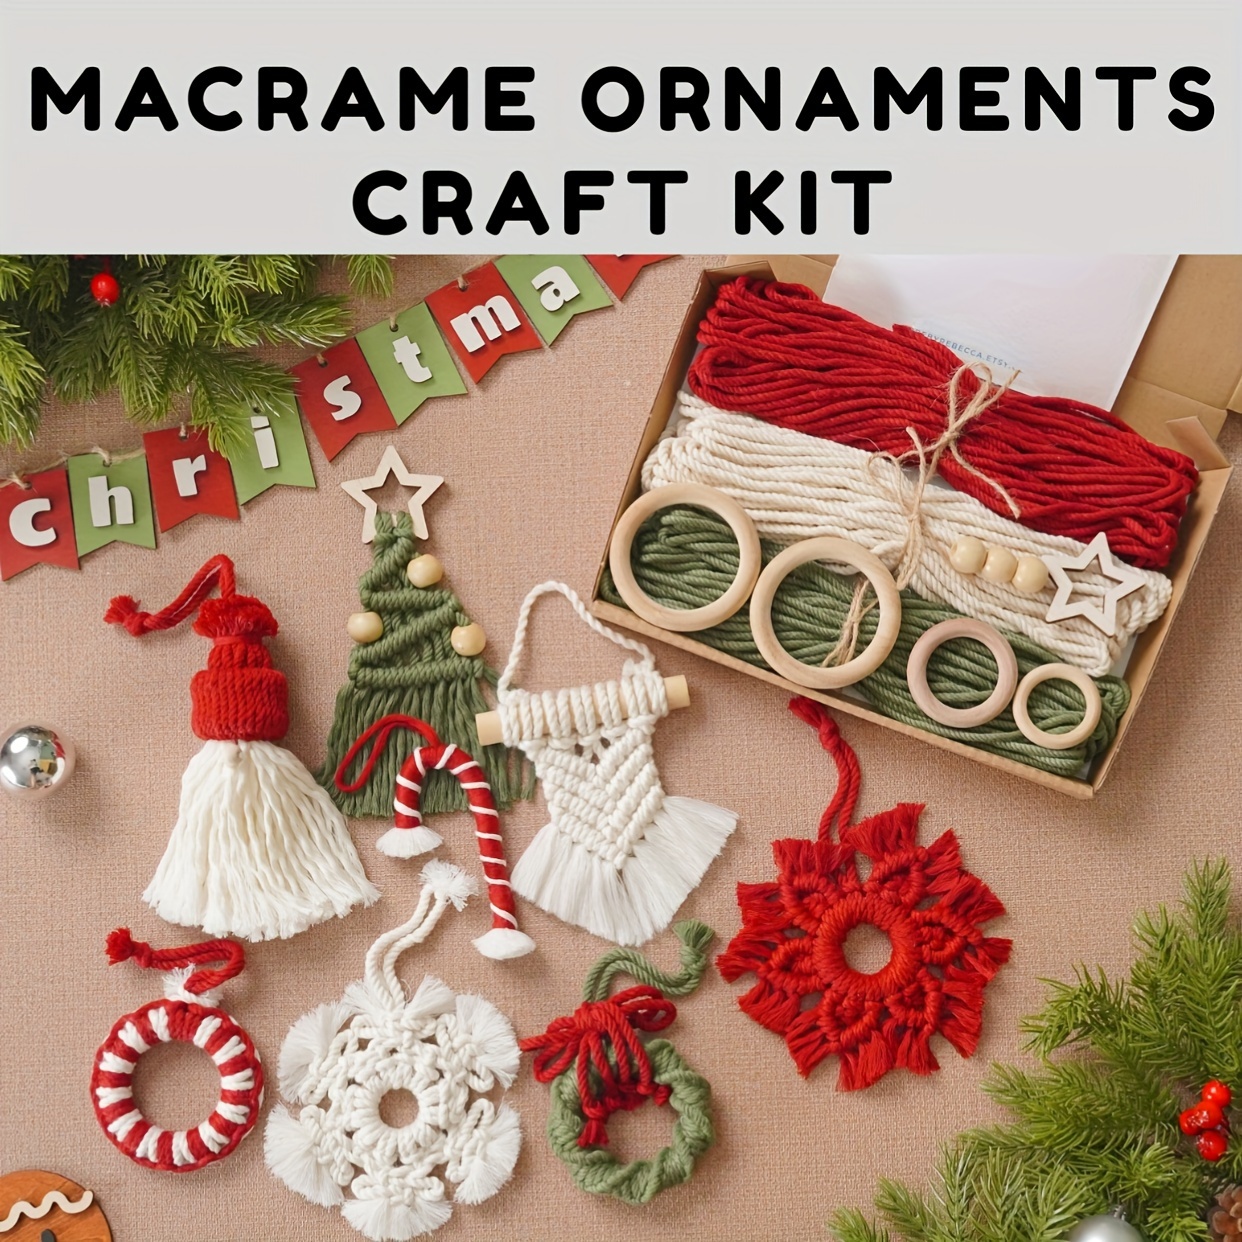 Christmas Craft Kit